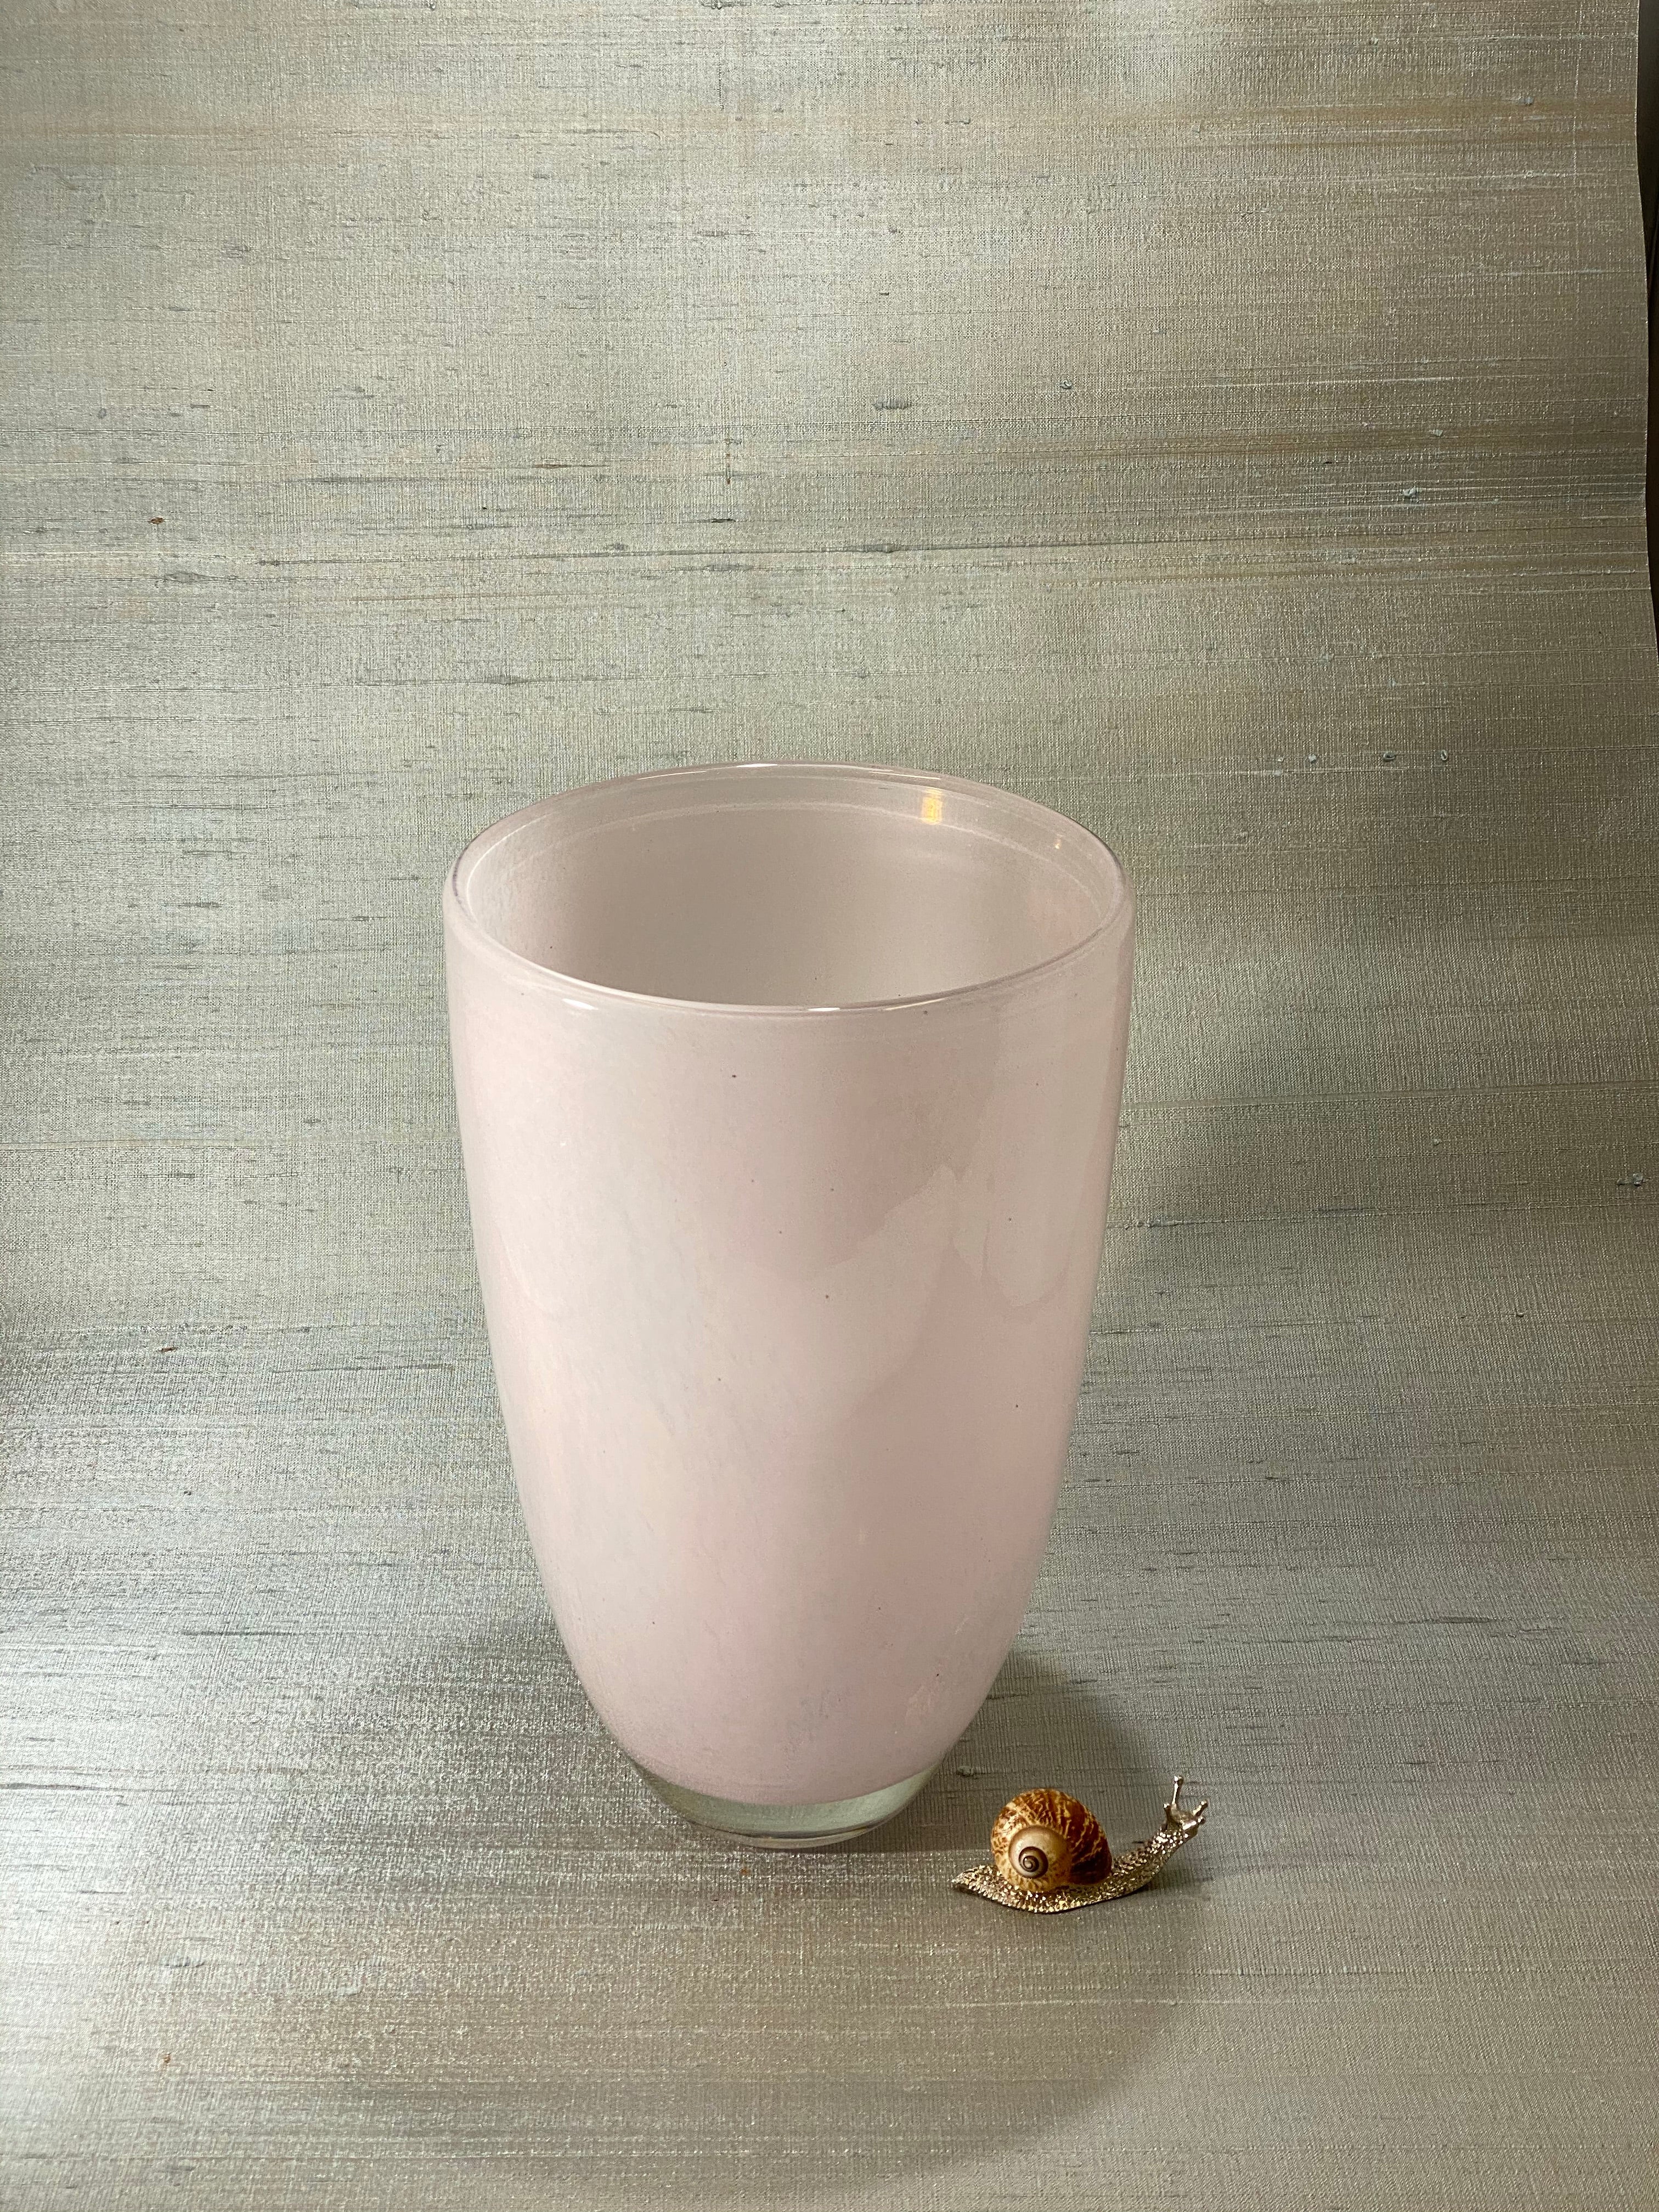 Dutz Rozenvaas Pastel Roze M / Rosevase Pastel Pink- Vaas / Vase